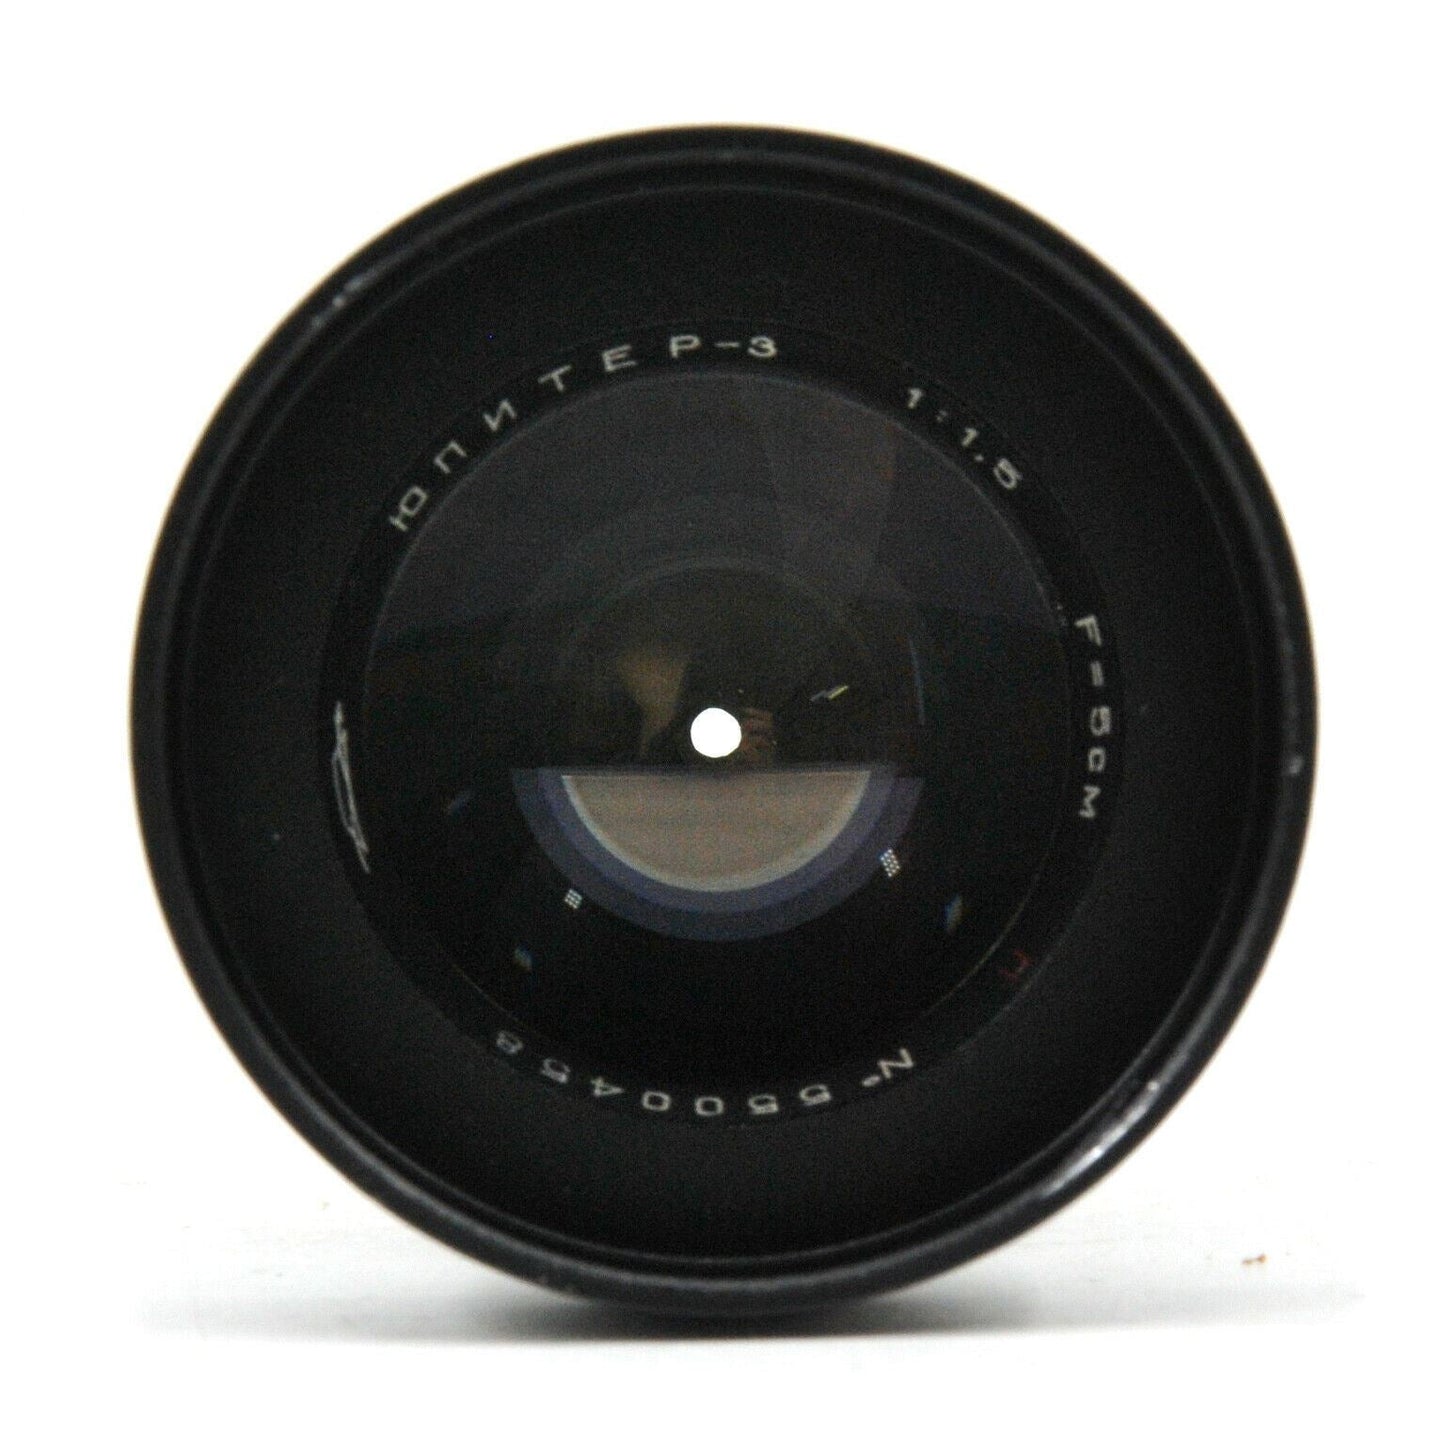 CLA'd Jupiter-3 50mm